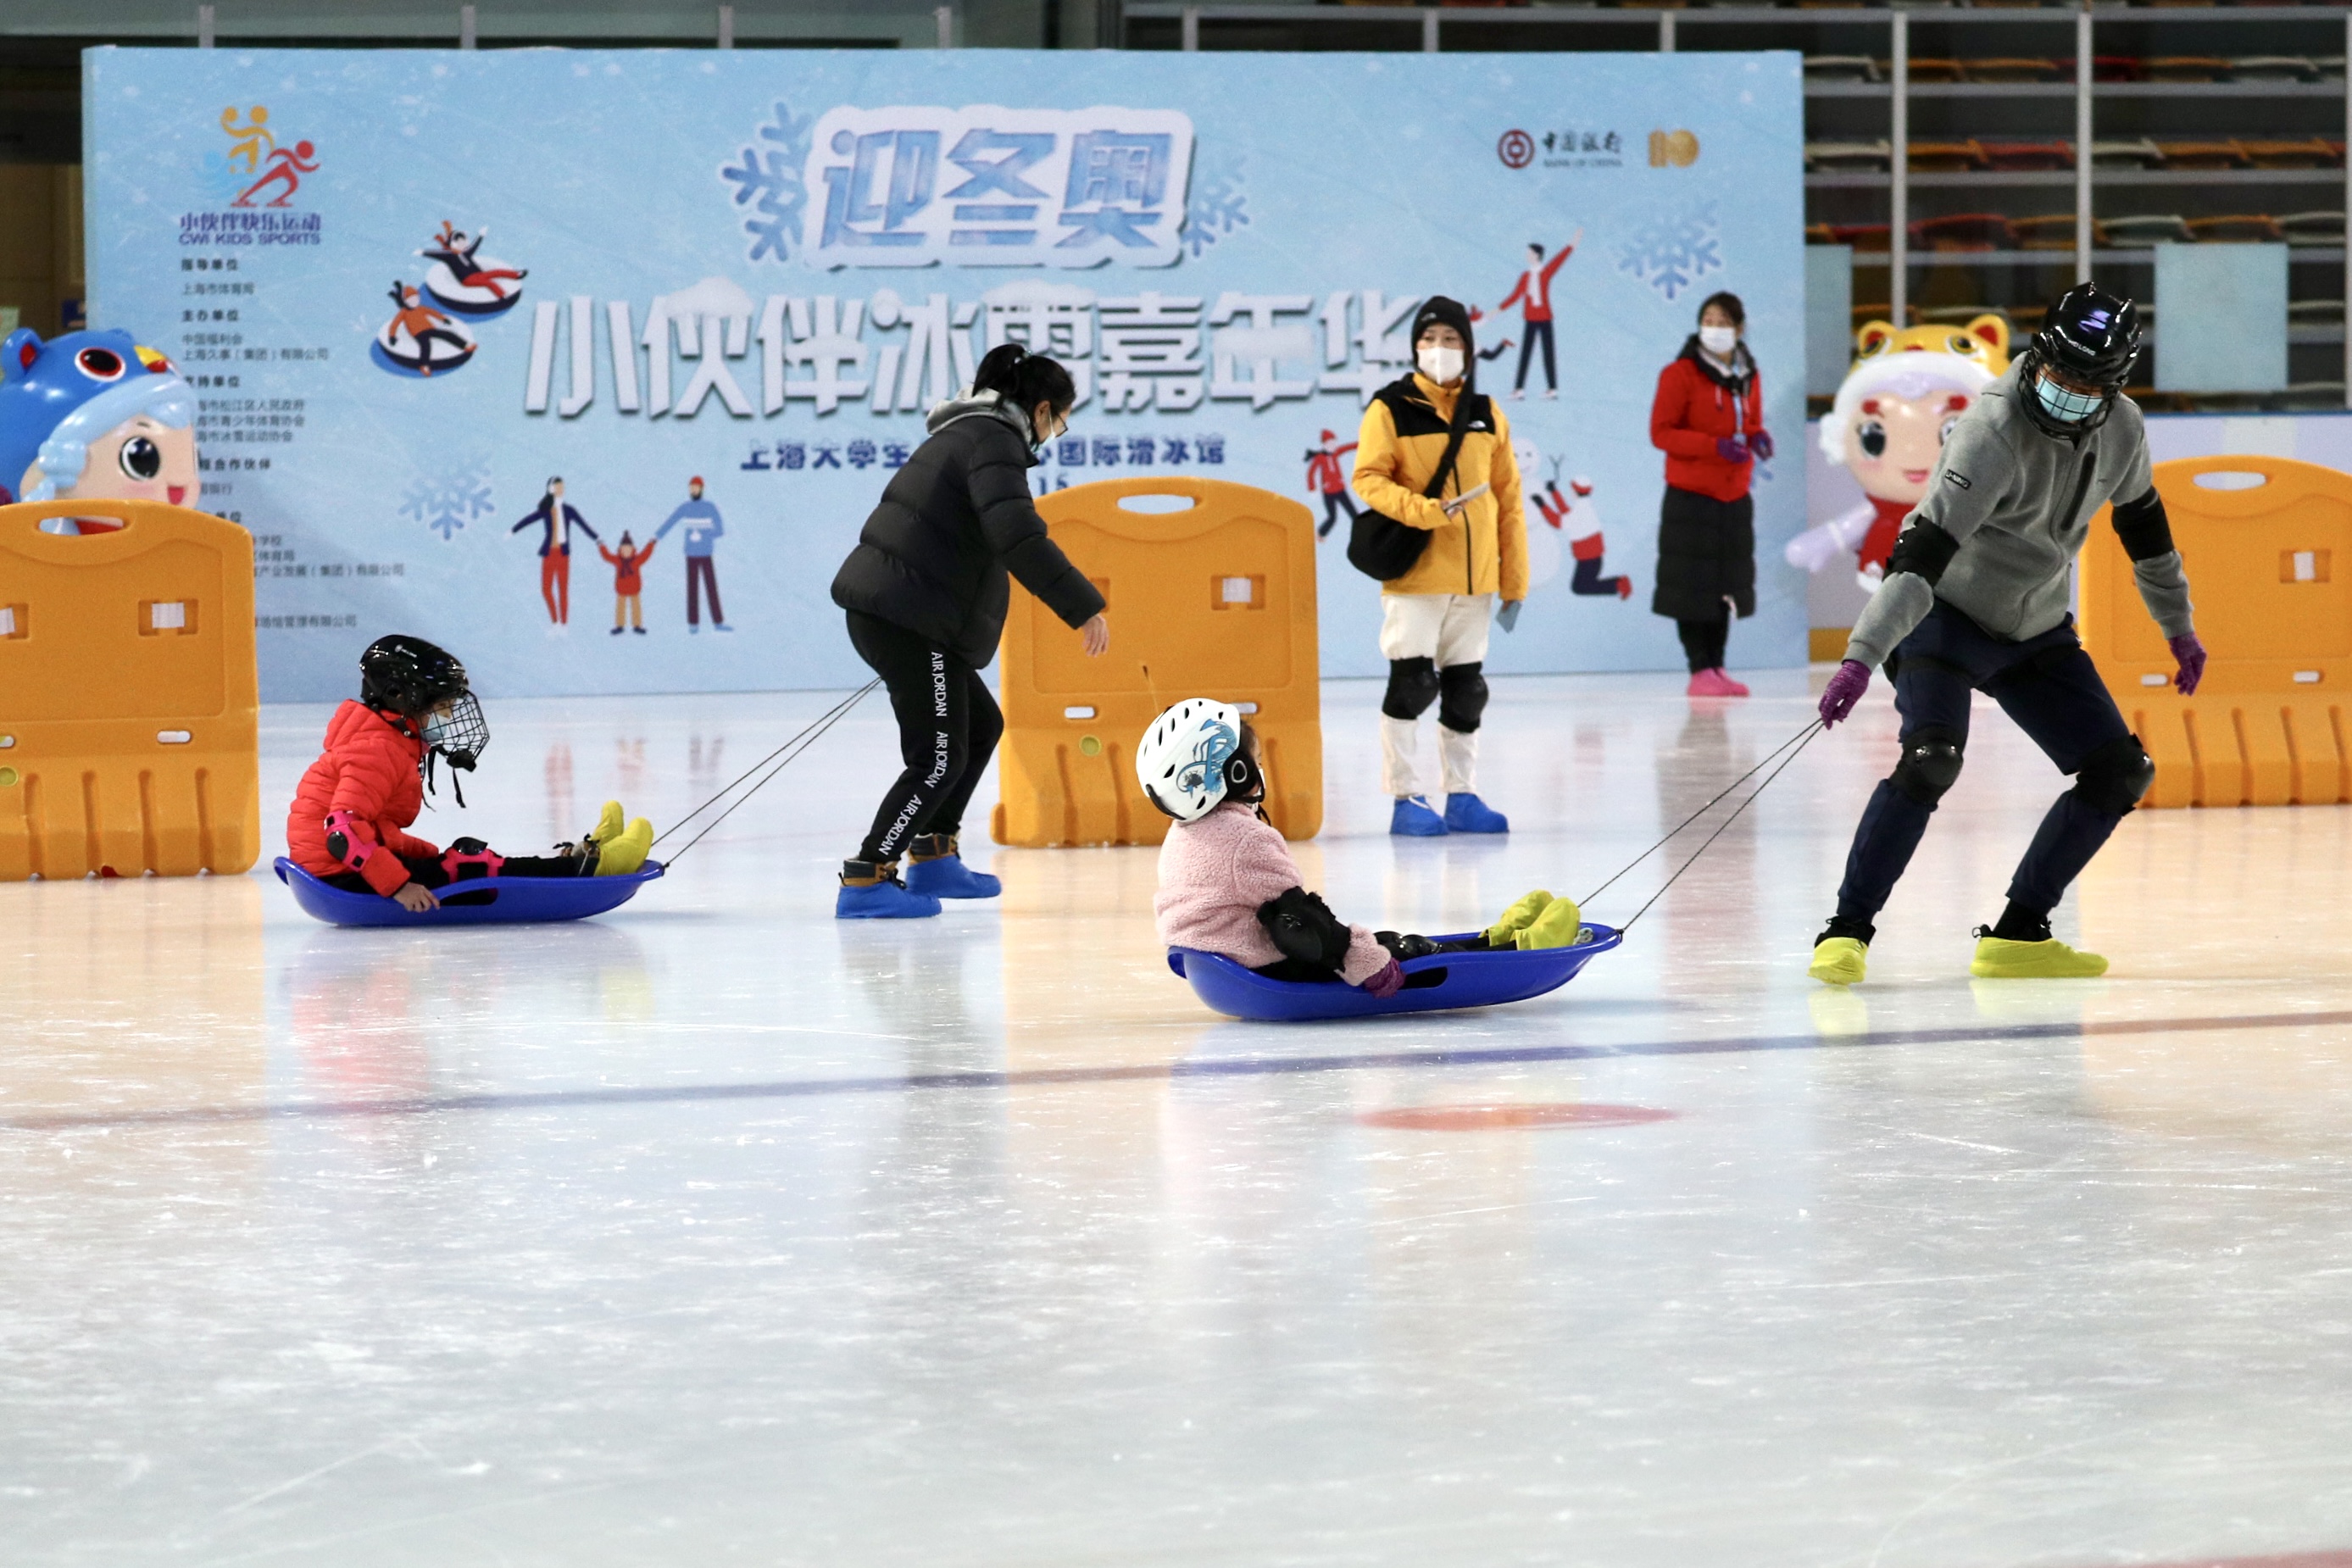 上海举办迎冬奥会主题活动少年儿童共享冰雪嘉年华